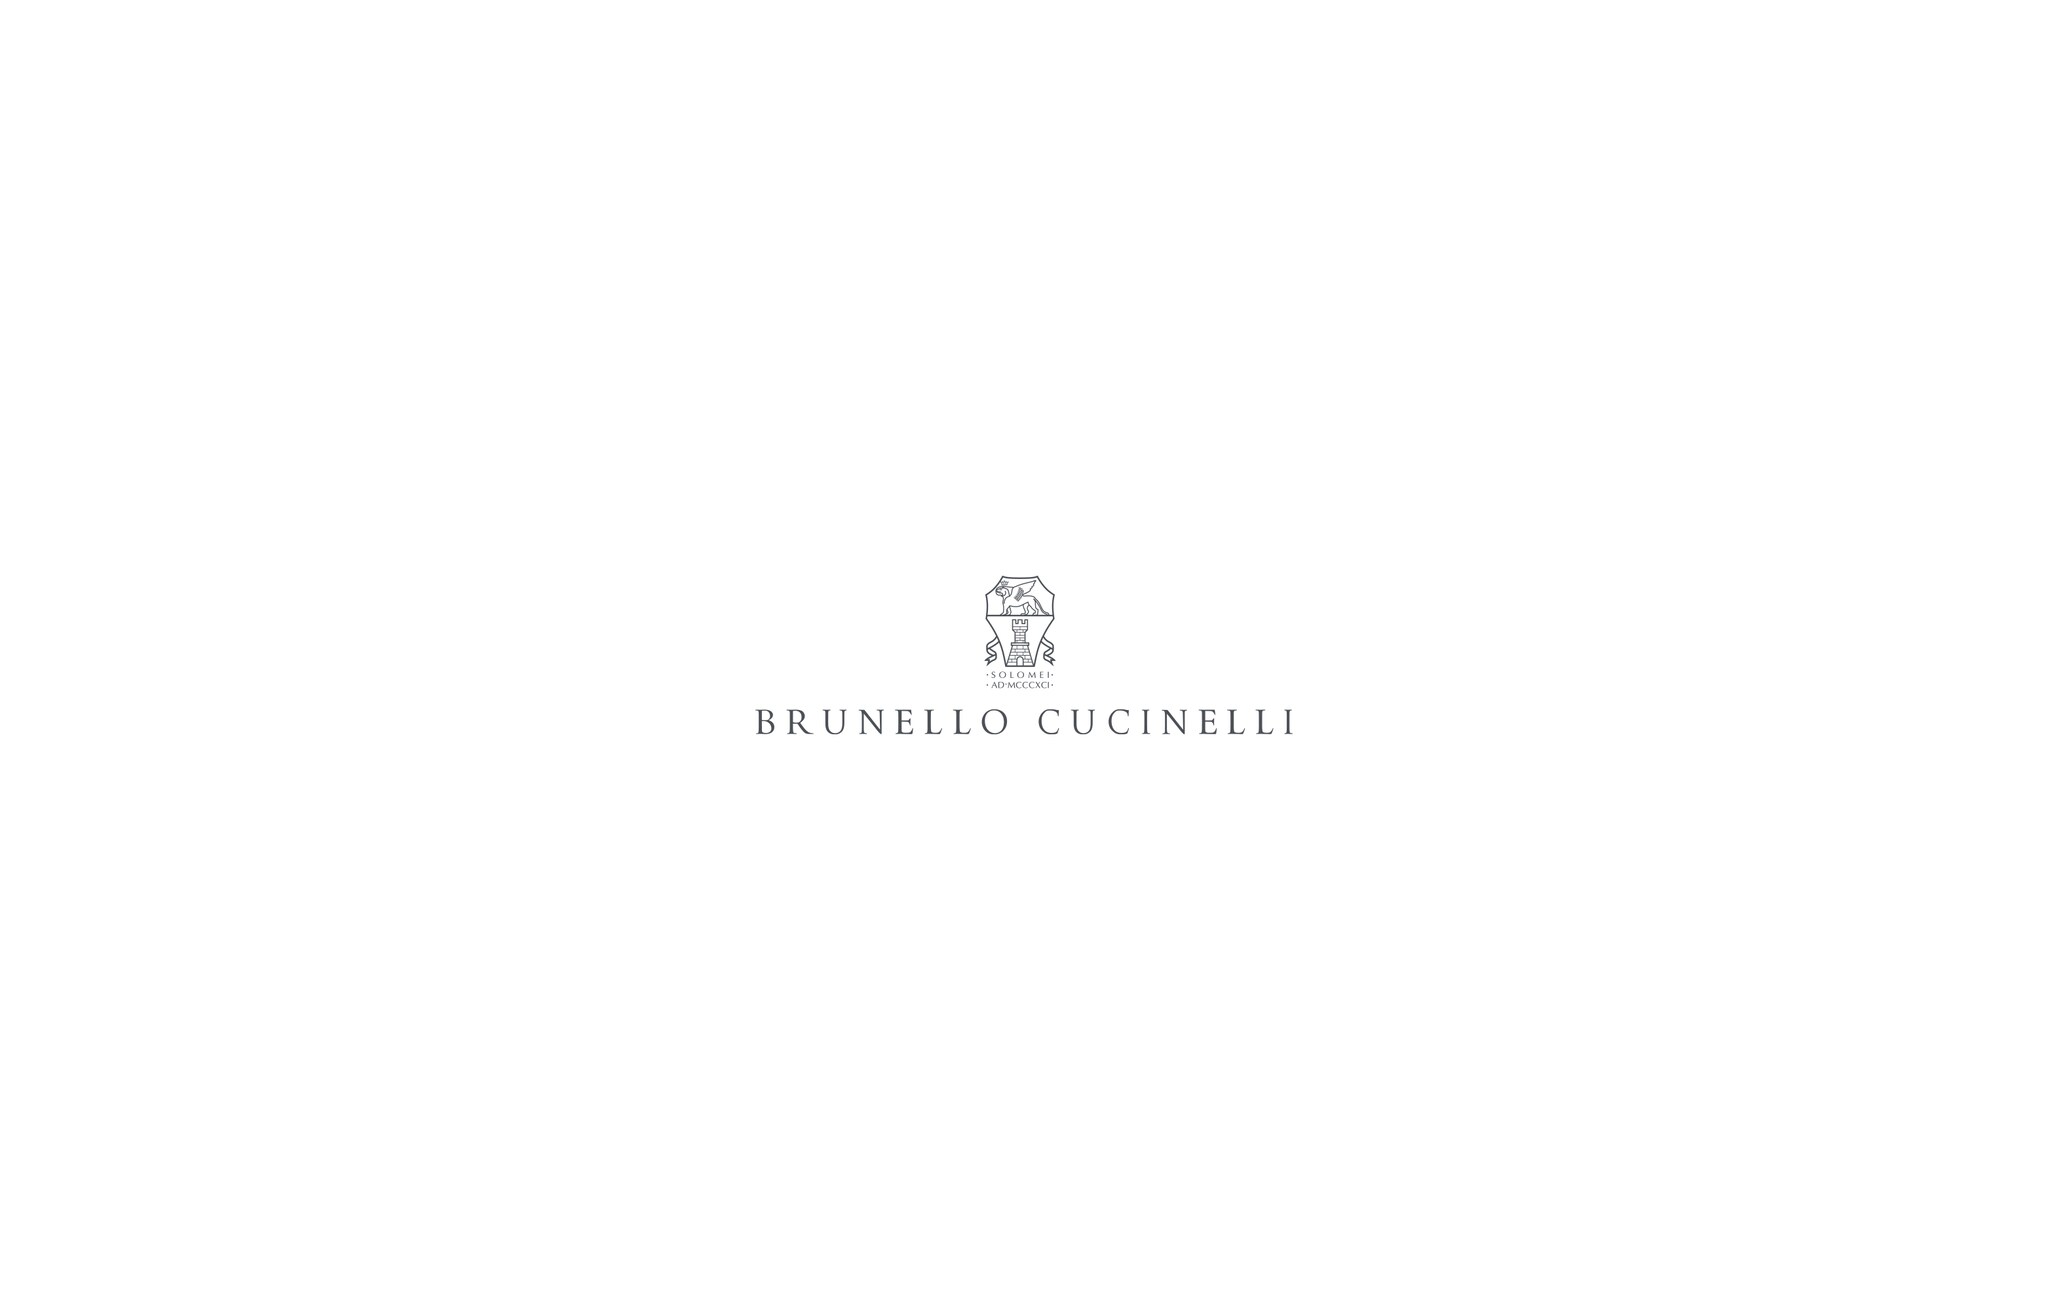  无袖羽绒服 燕麦色 女款 - Brunello Cucinelli 